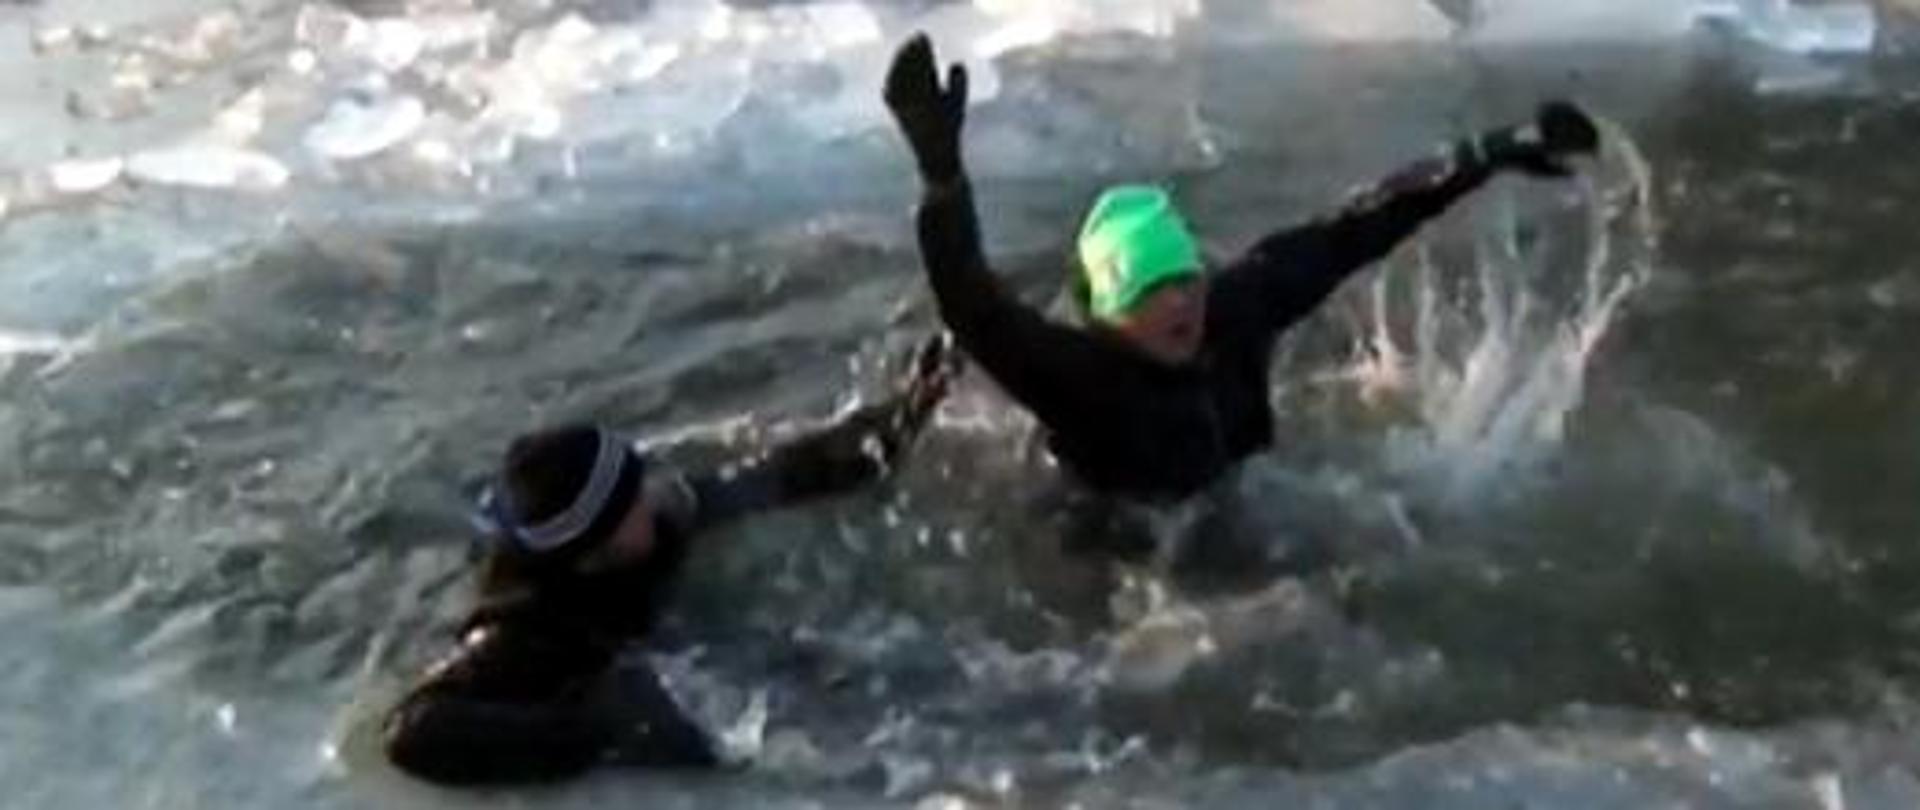 Zdjęcie przedstawia osobę pod kto®ą zarwał się lód i jest ratowana